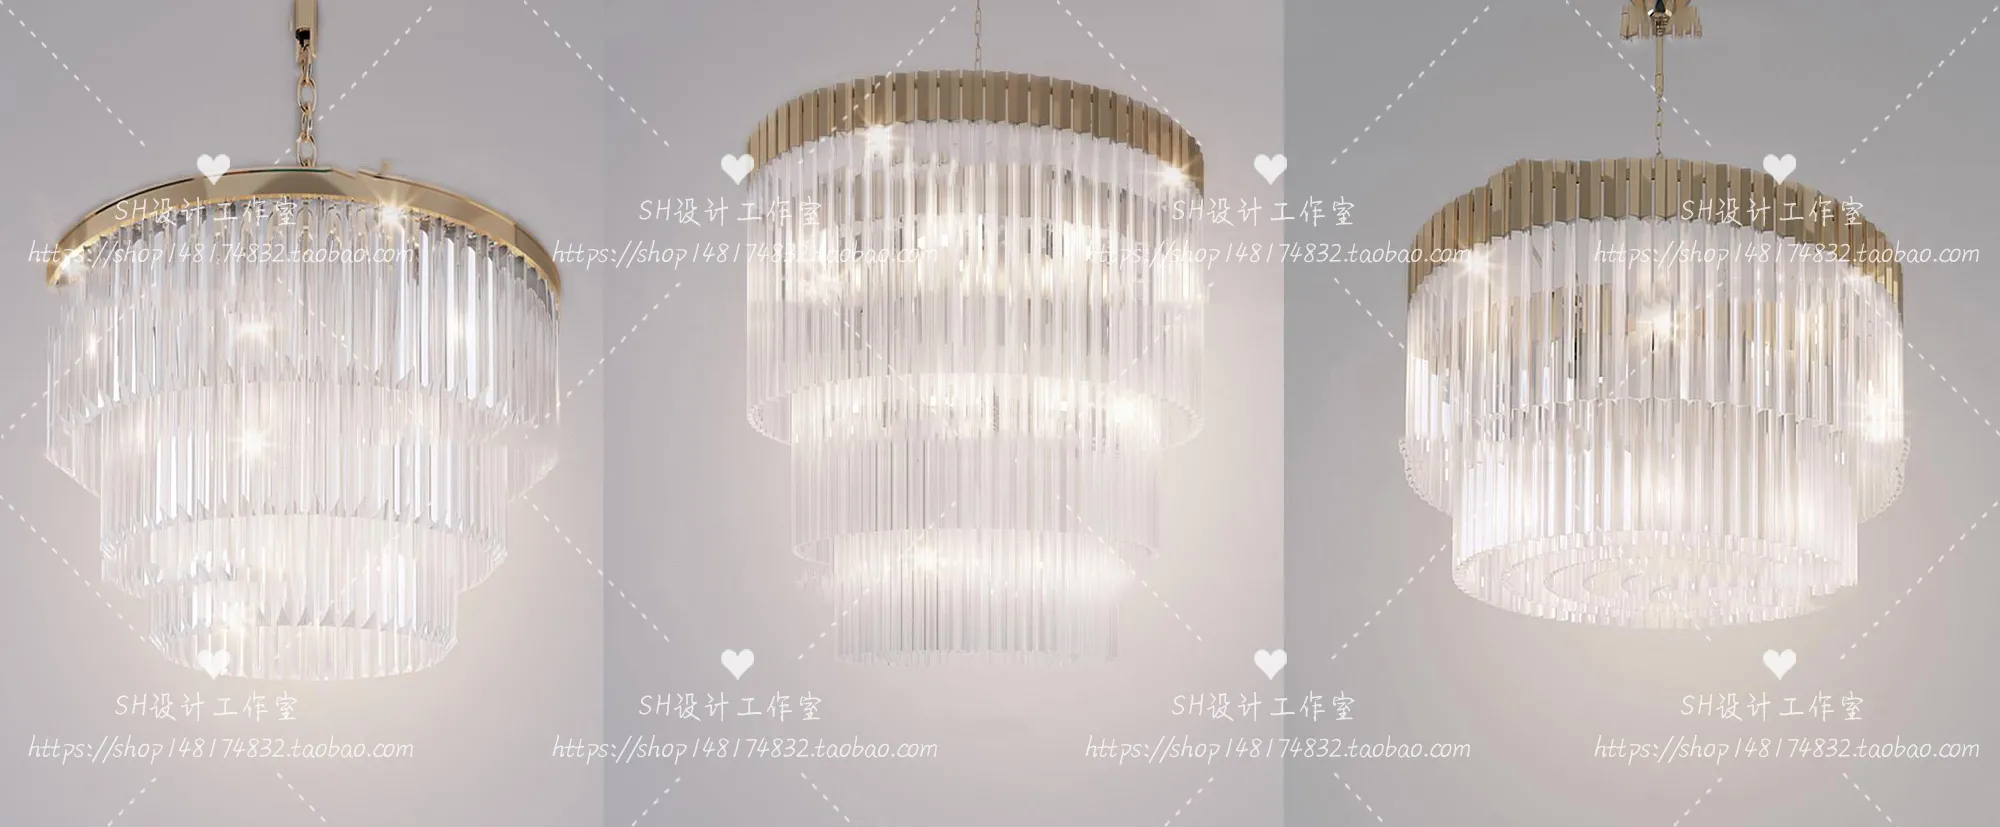 Lights – Chandelier 3D Models – 0579